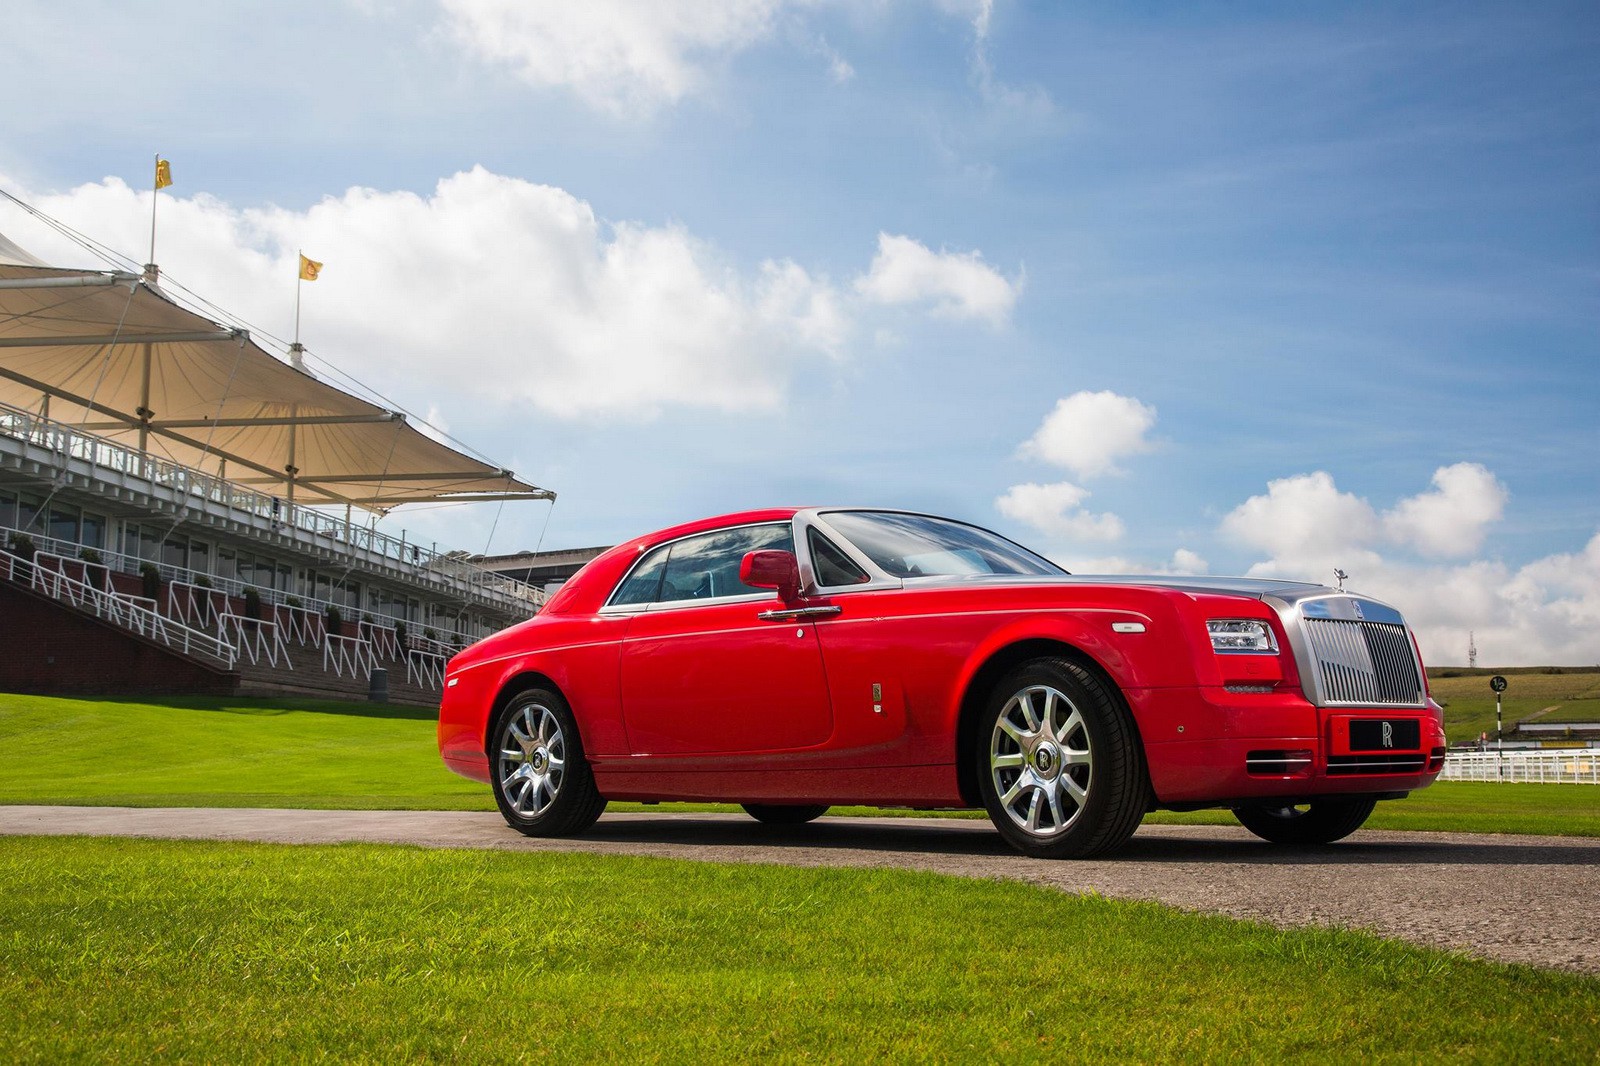 Rolls Royce presenta una colecci贸n basada en el mundo ecuestre